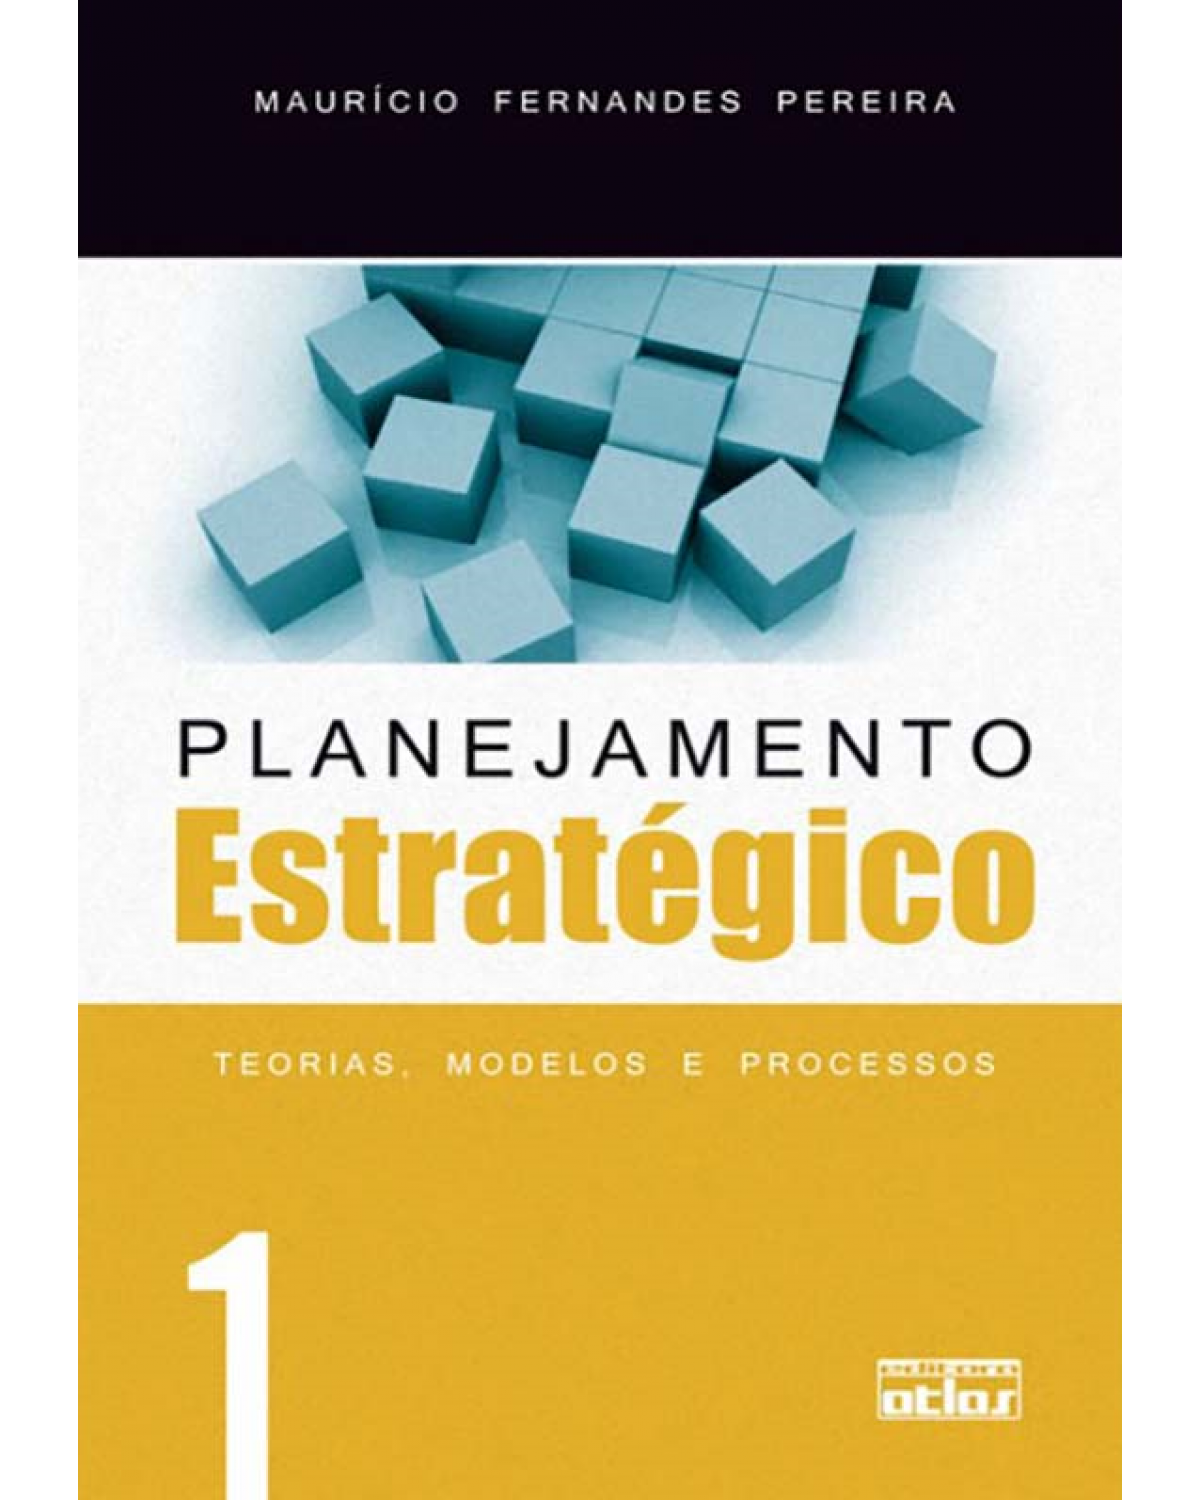 Planejamento estratégico - Volume 1: Teorias, modelos e processos - 1ª Edição | 2010